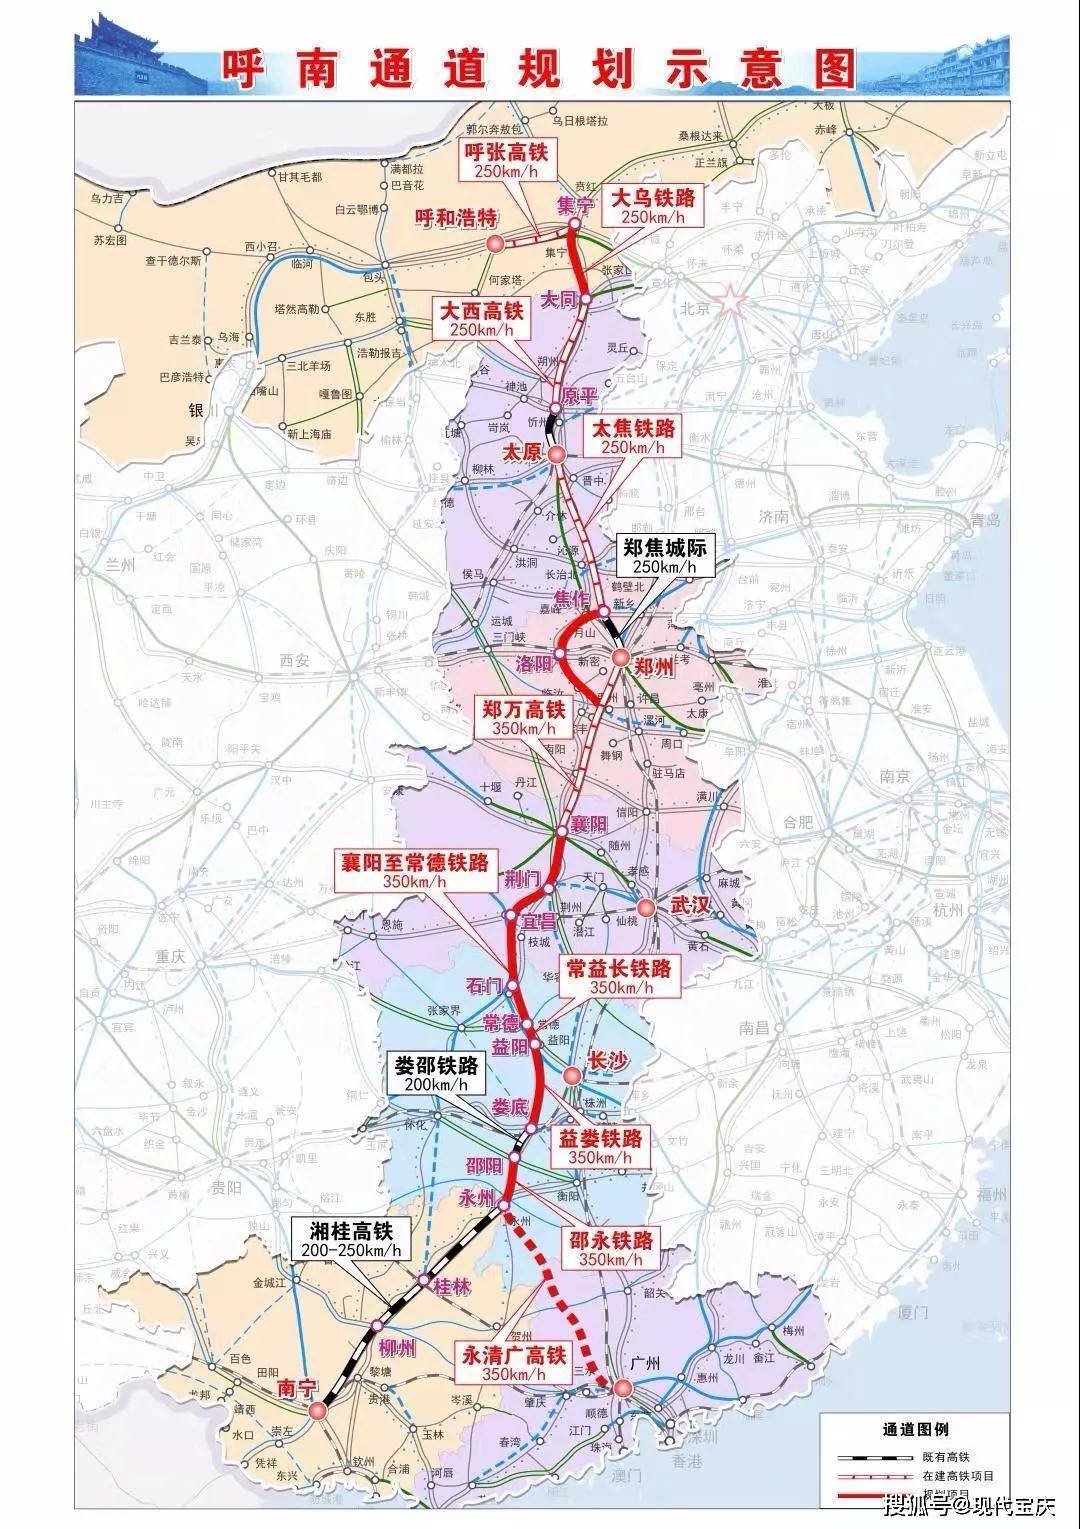 荆荆高铁南延表述为呼南高铁双通道,是真实想法还是安抚荆州所需